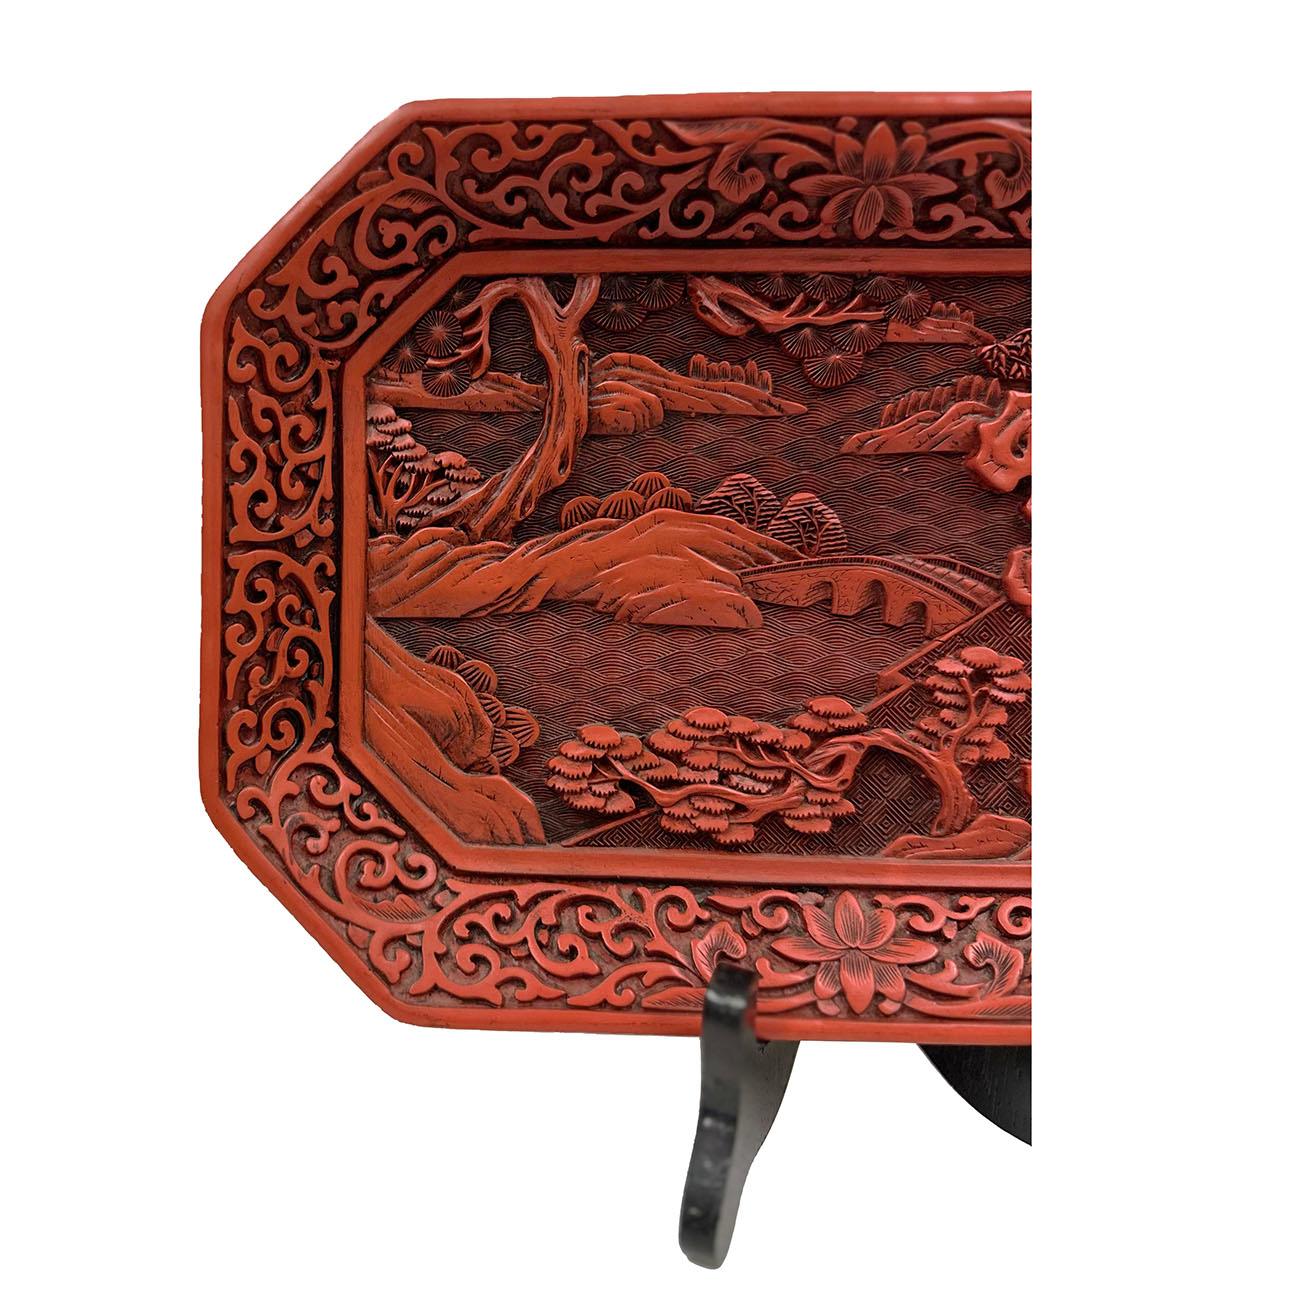 Diese atemberaubende chinesische Hand geschnitzt Zinnober lackiert Platte hat Intricate Lack Schnitzerei Kunst der chinesischen traditionellen Archäologie und Landschaft Design. Es trägt den Namen The Sense of Tough, ein originelles Kunstwerk in der